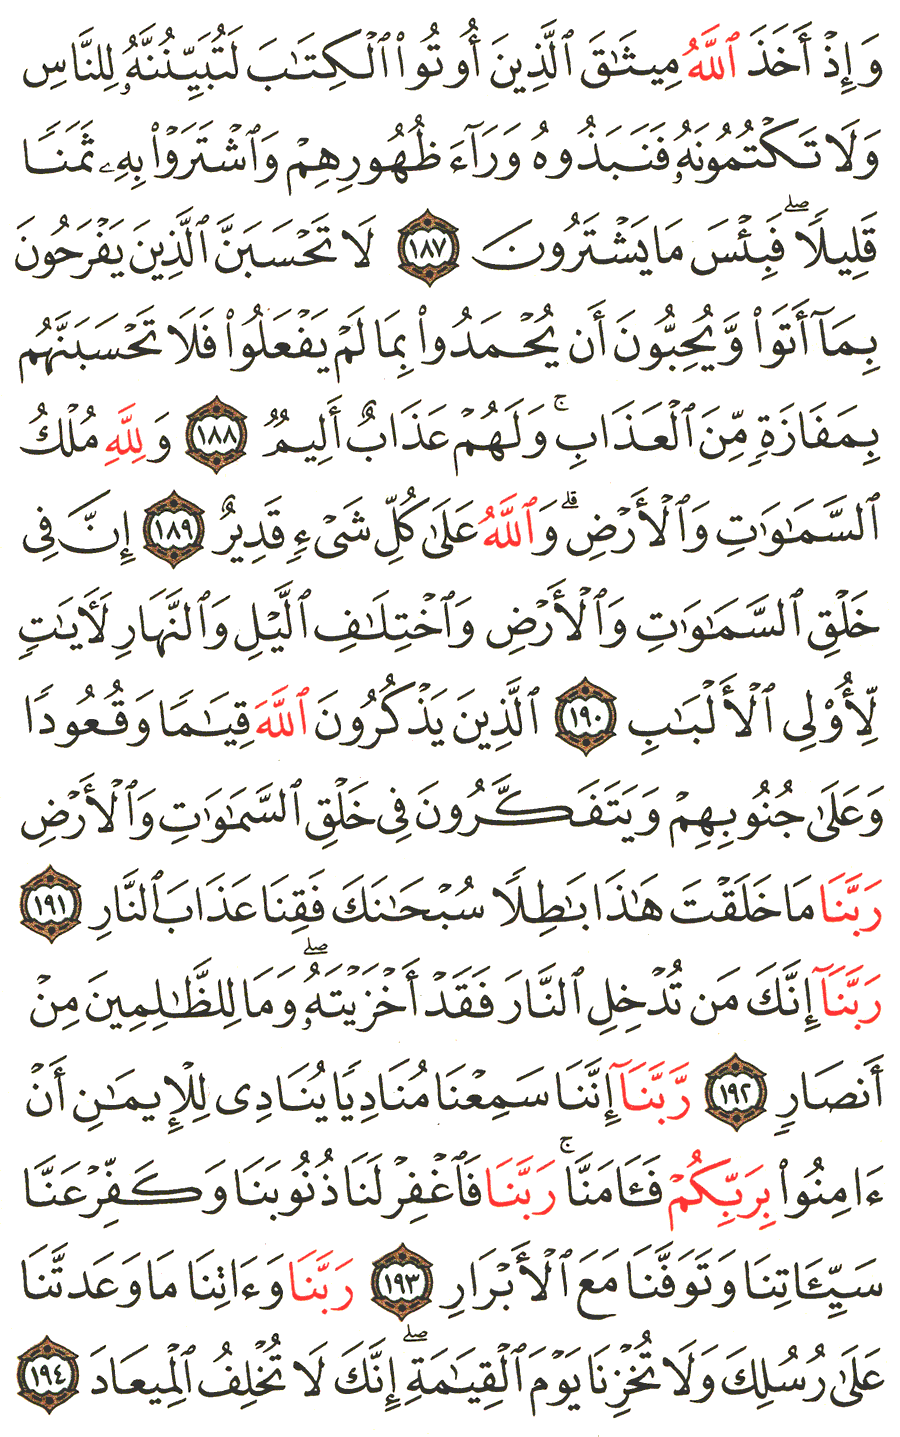 الصفحة 75 من القرآن الكريم